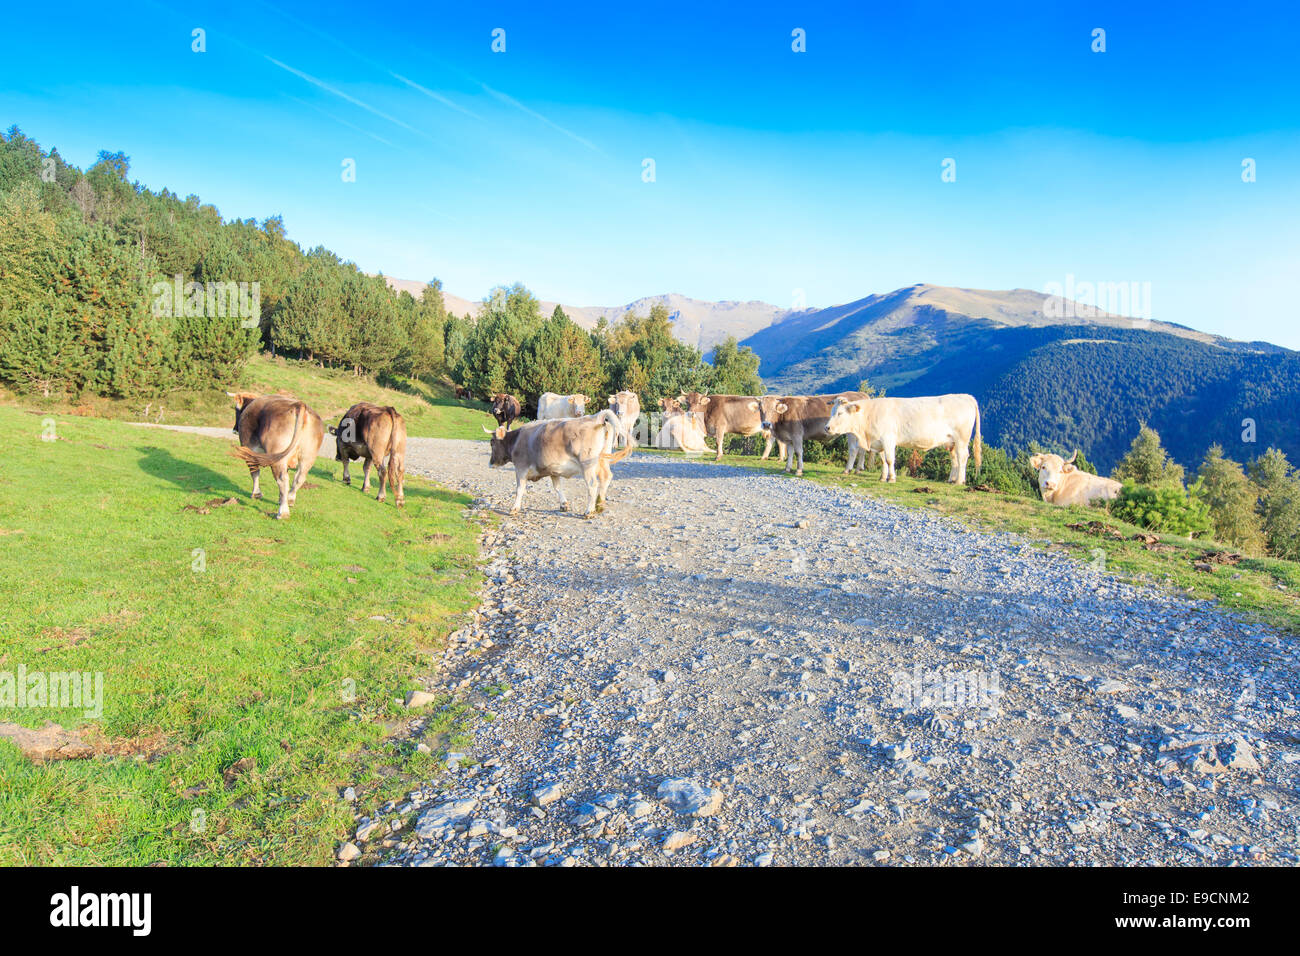 Eine Herde von weißen und braunen Kühe in den spanischen Pyrenäen Wandern und liegen auf einem Schotterweg an einem Berghang Stockfoto